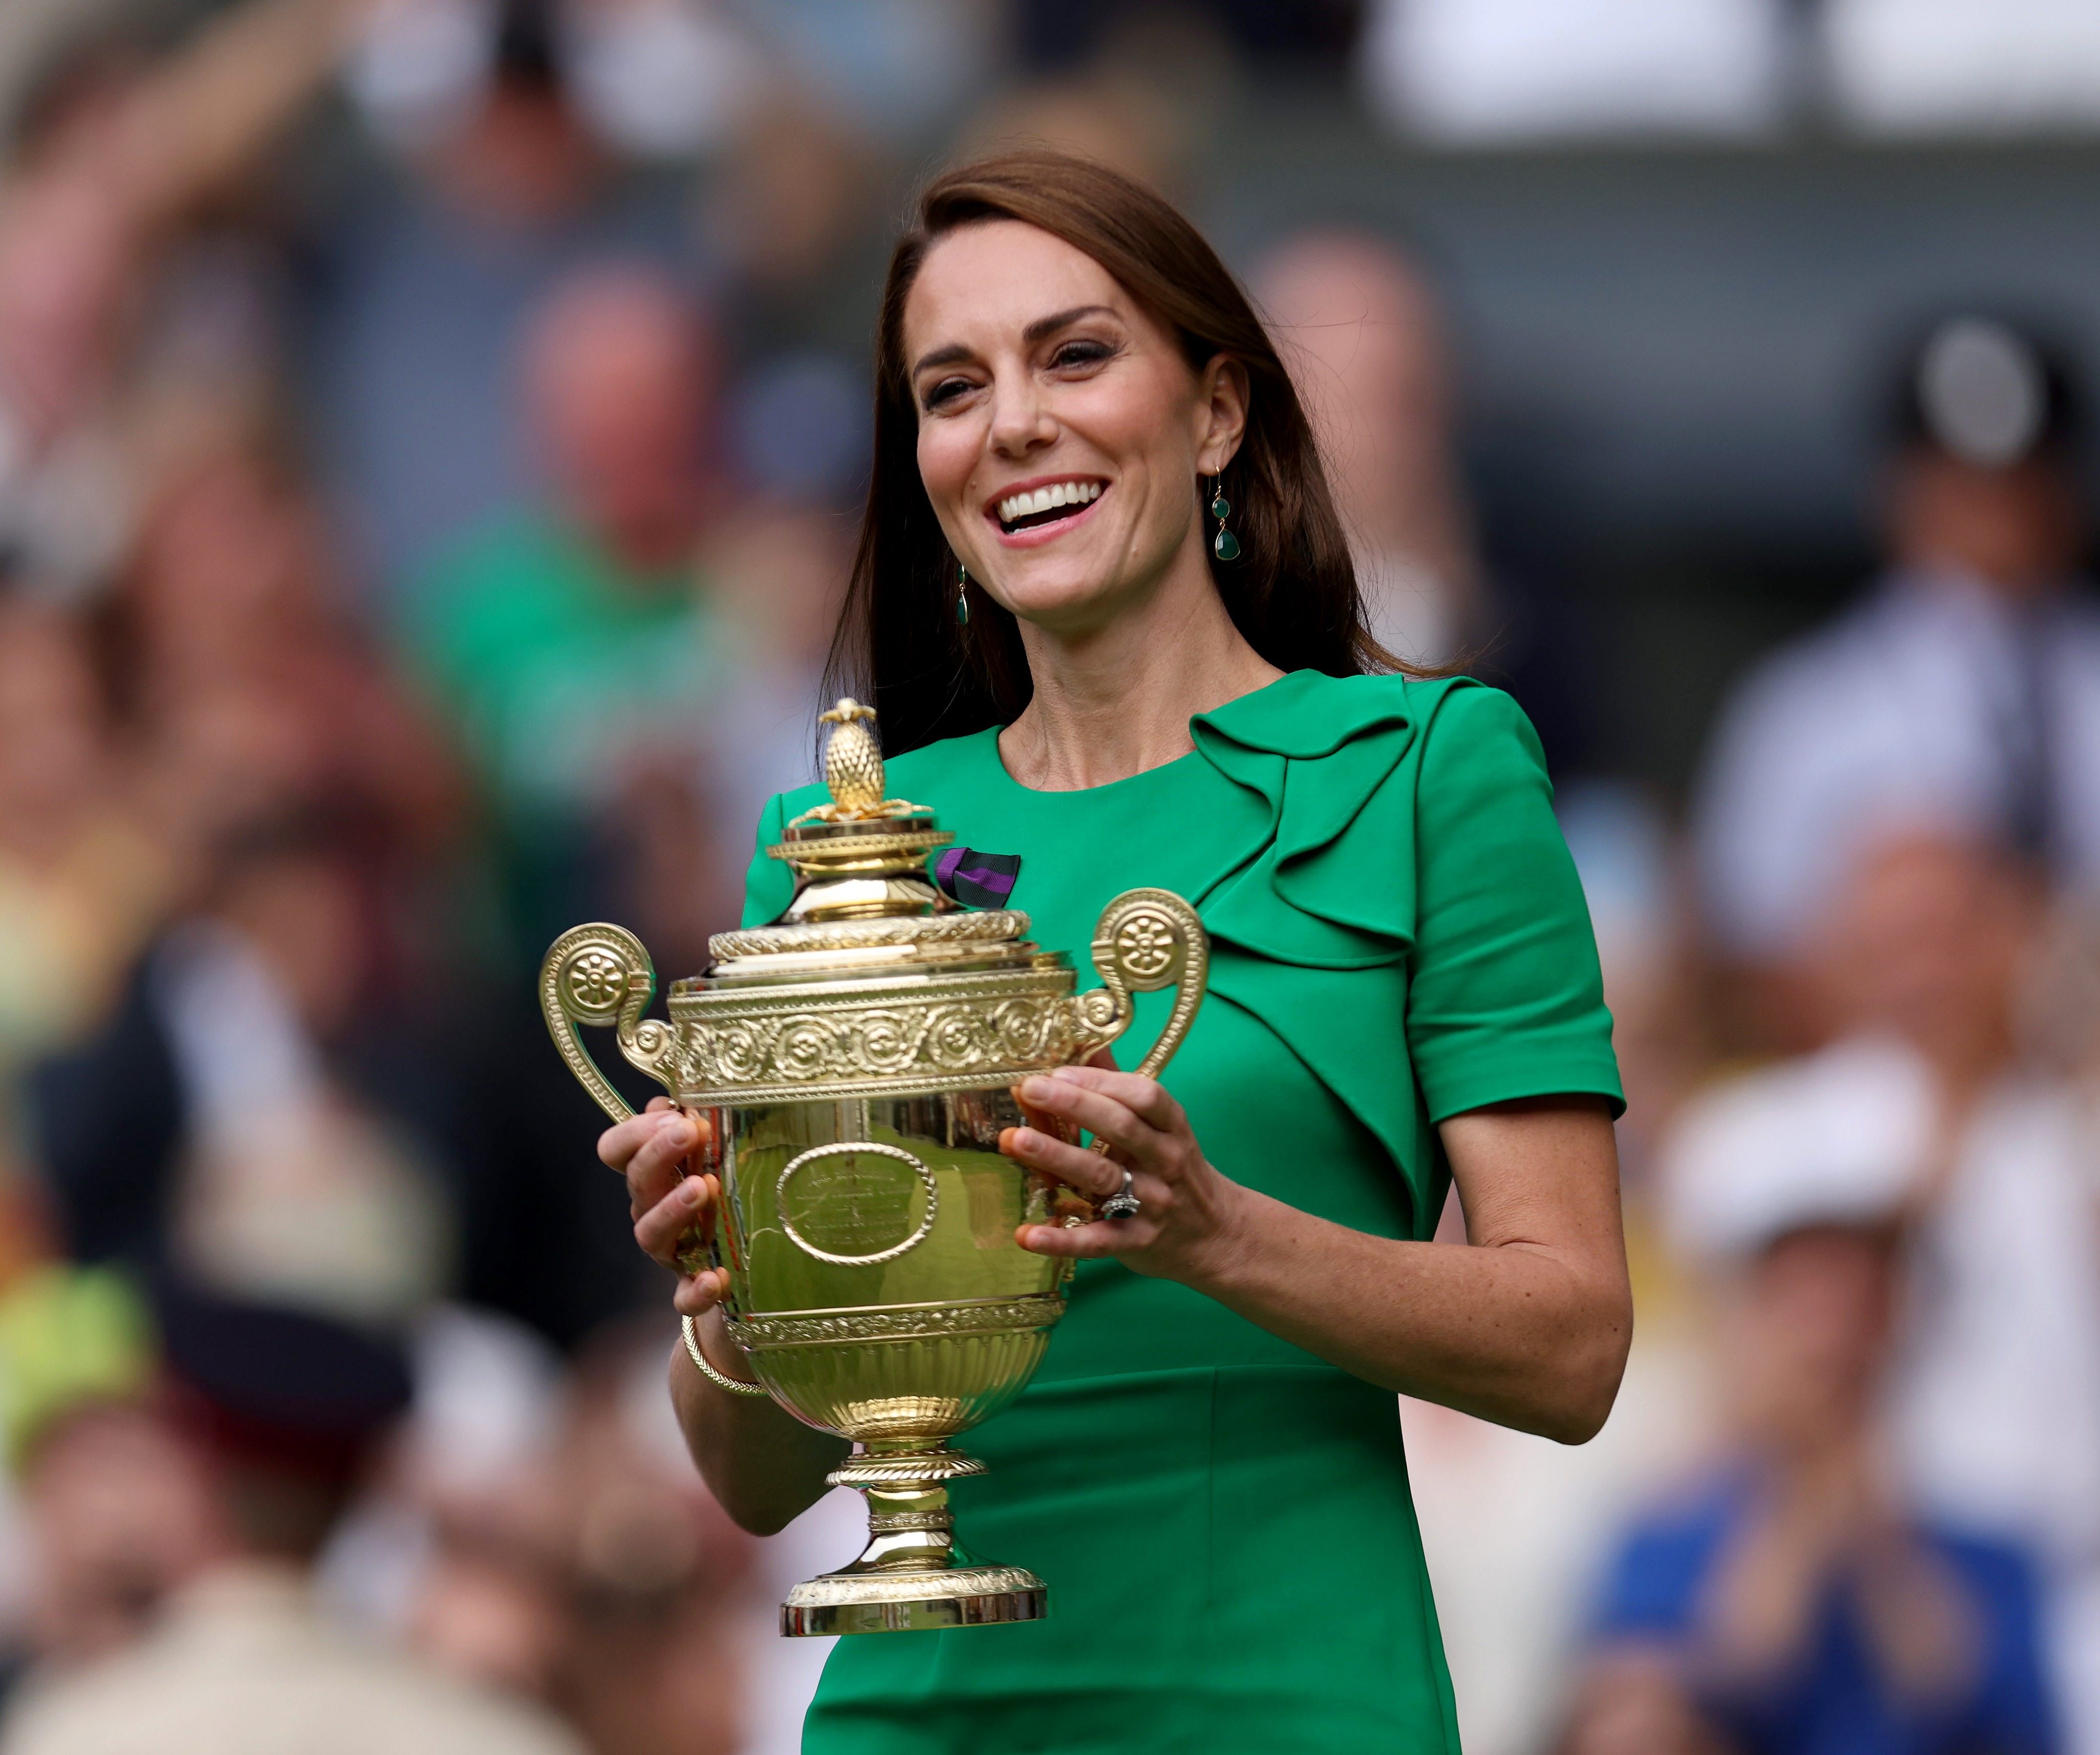 La princesa Kate estará en Wimbledon el domingo para entregar el trofeo al ganador masculino.